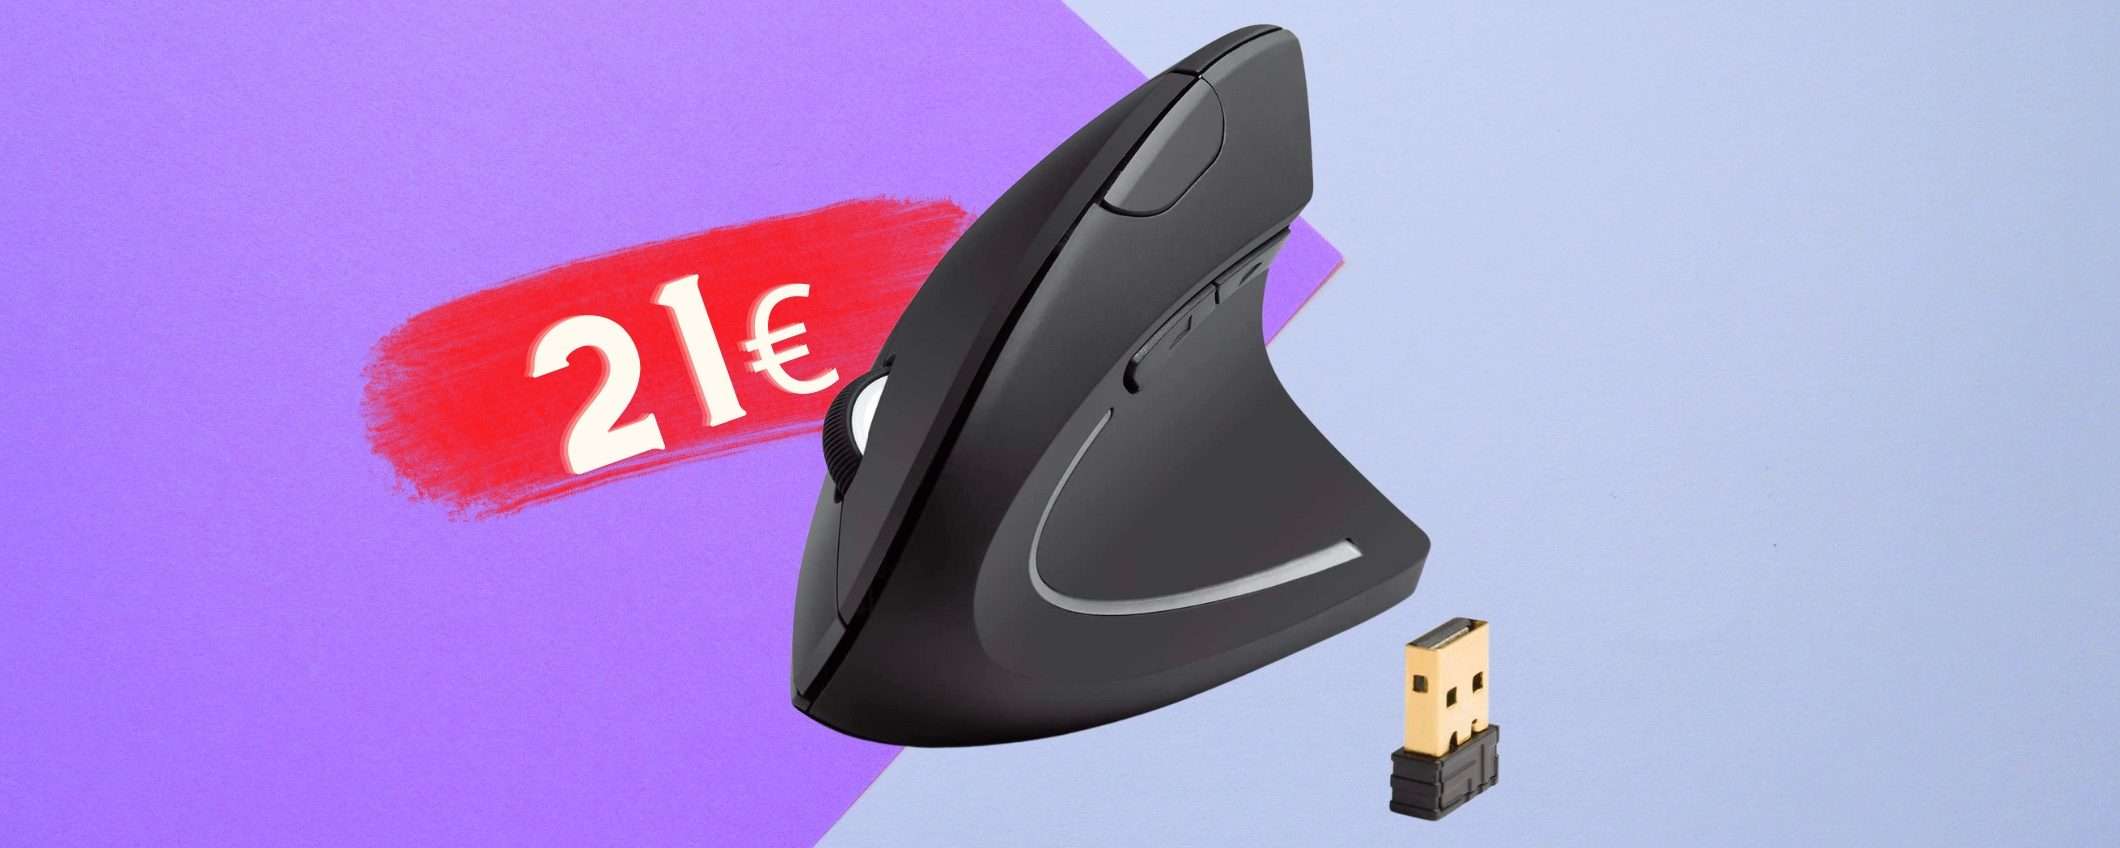 Mouse verticale di Anker: comodo, ergonomico, ZERO fili (21€)